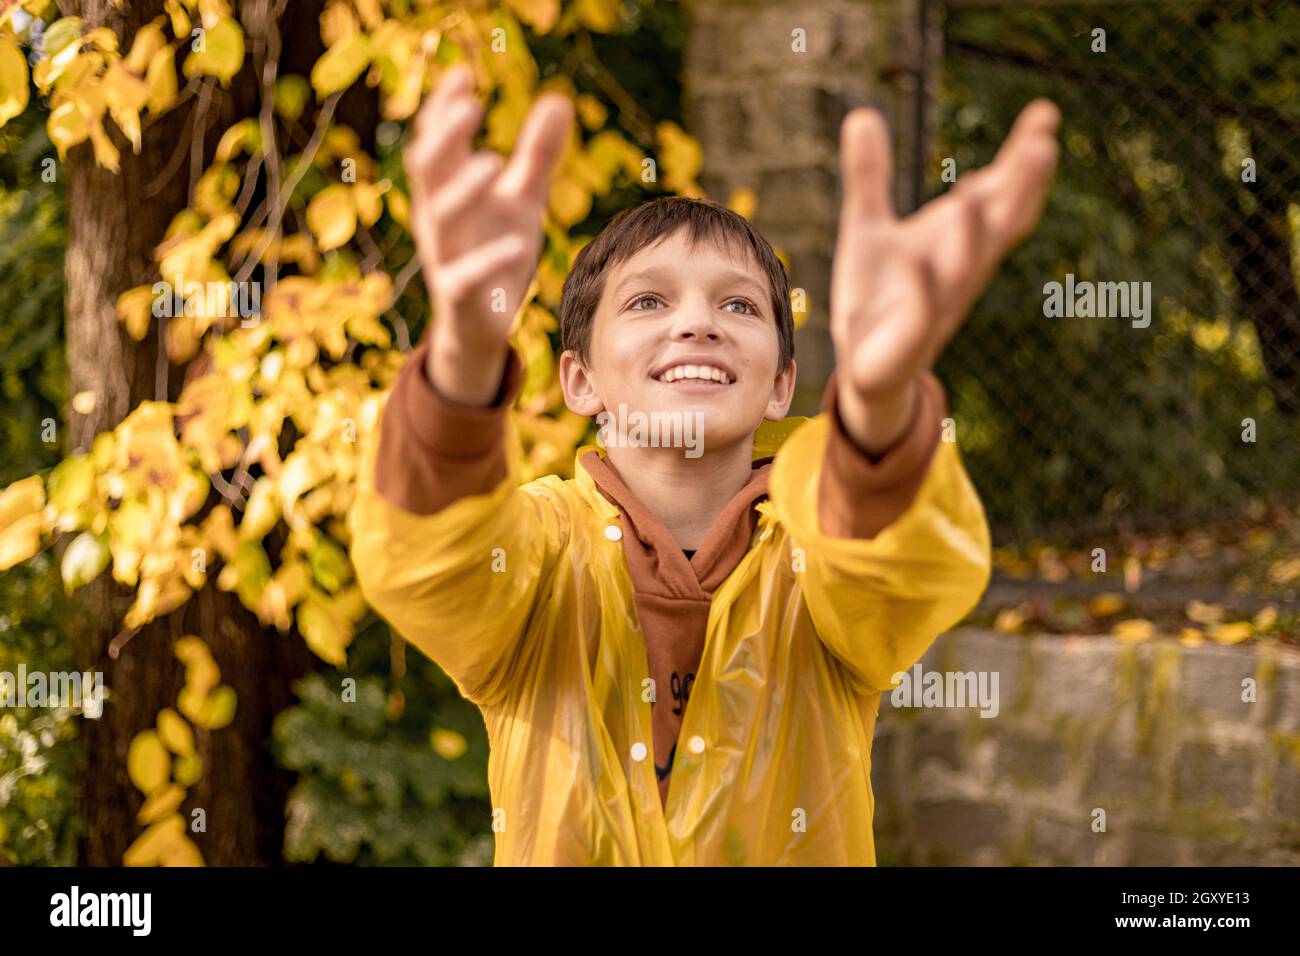 Photo d'adolescent dans un imperméable jaune parmi les feuilles d'automne, marche dans le parc de la ville, bonheur, rire Banque D'Images